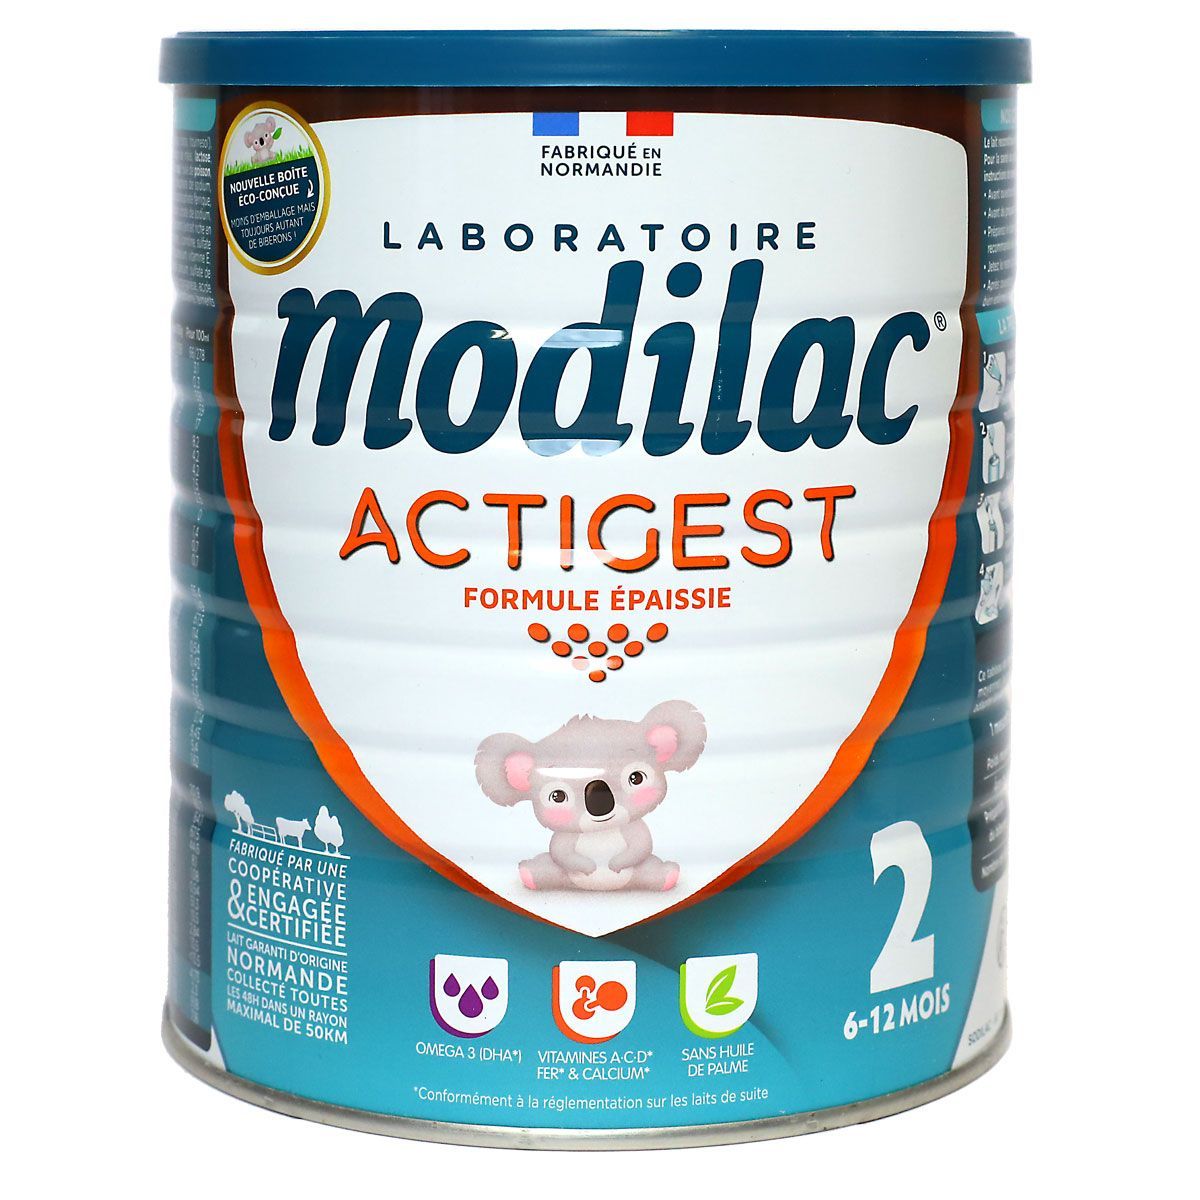 Modilac Actigest 2 est un lait adapté aux nourrissons âgés de 6